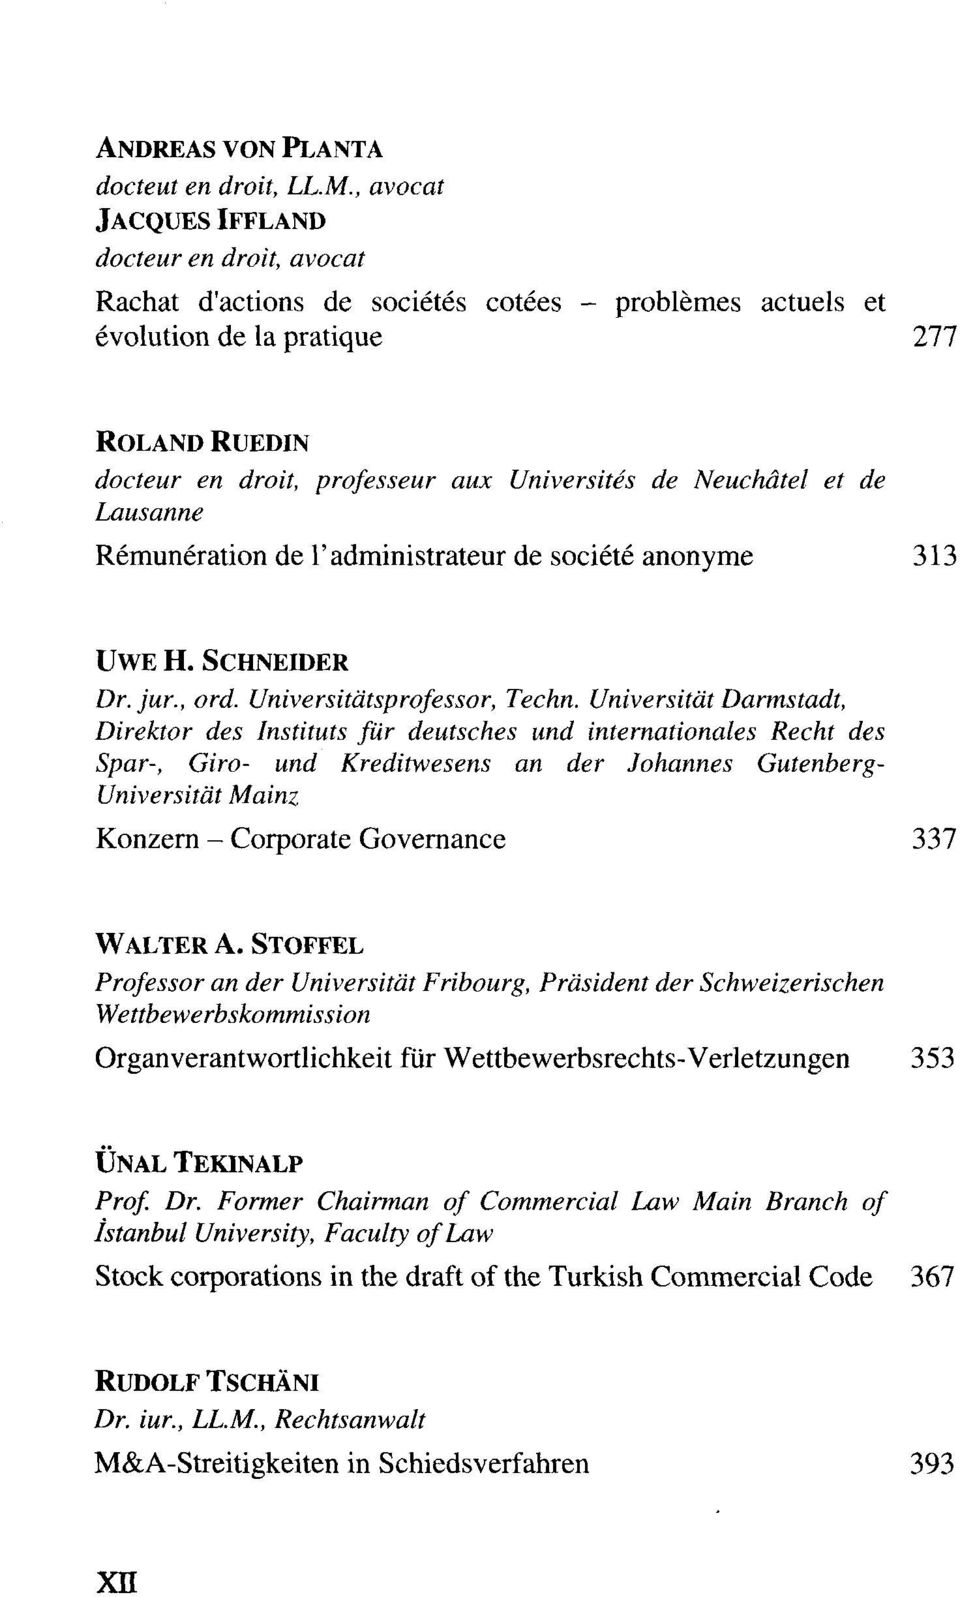 Neuchätel et de Lausanne Remuneration de l'administrateur de societe anonyme 313 UWE H. SCHNEIDER Dr. jur., ord. Universitätsprofessor, Techn.